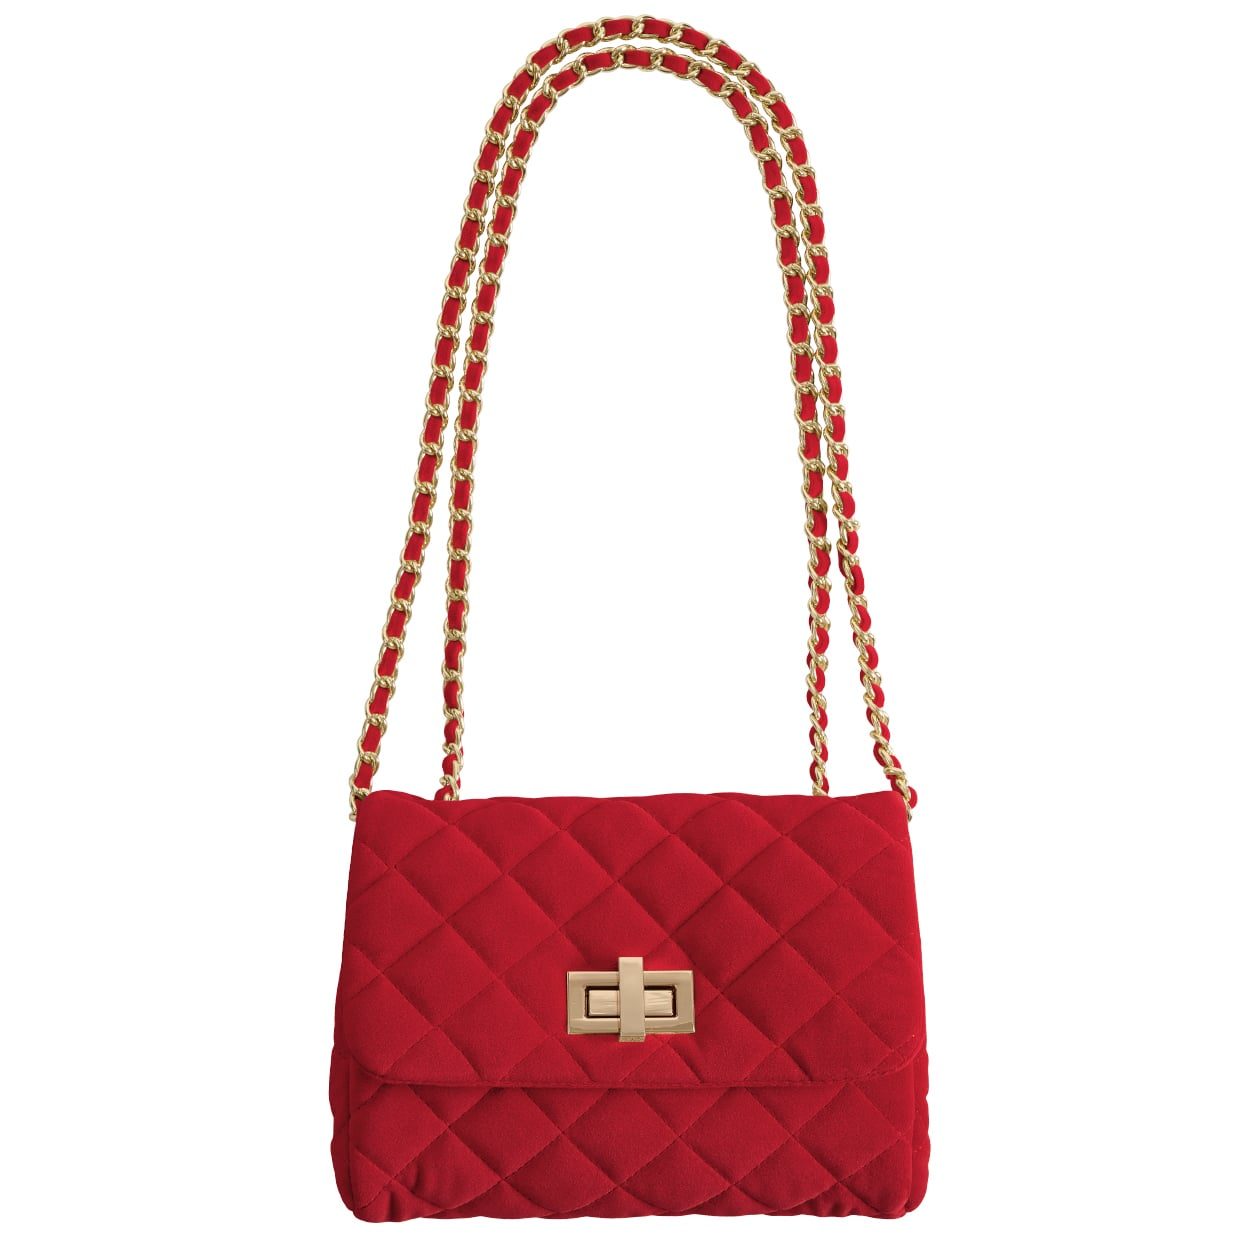 Medium velvet bag – Scarlet red